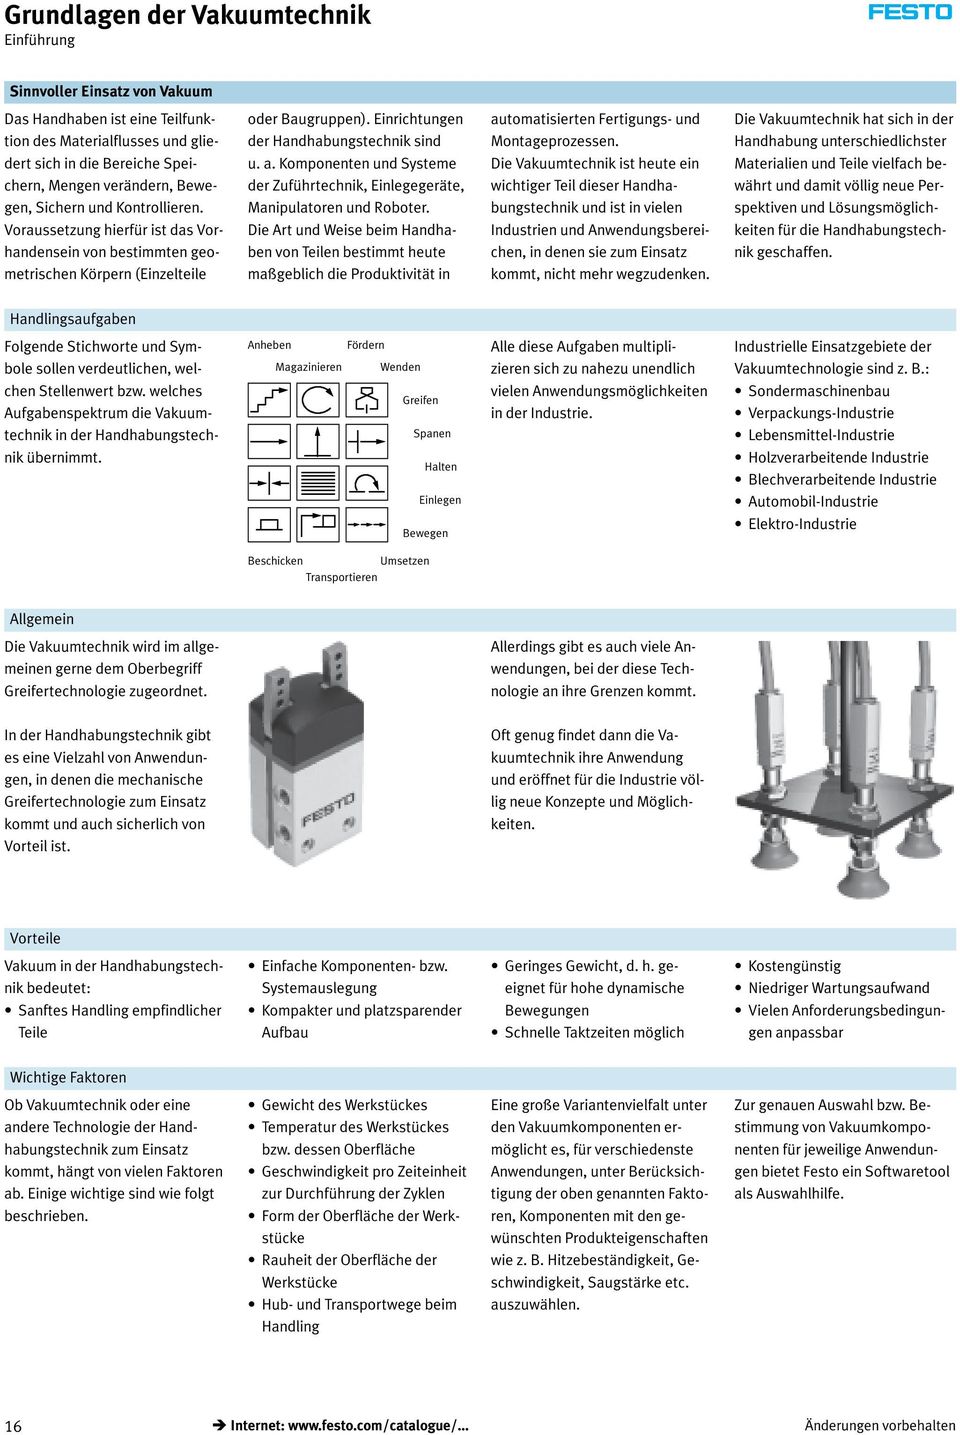 Komponenten und Systeme der Zuführtechnik, Einlegegeräte, Manipulatoren und Roboter.